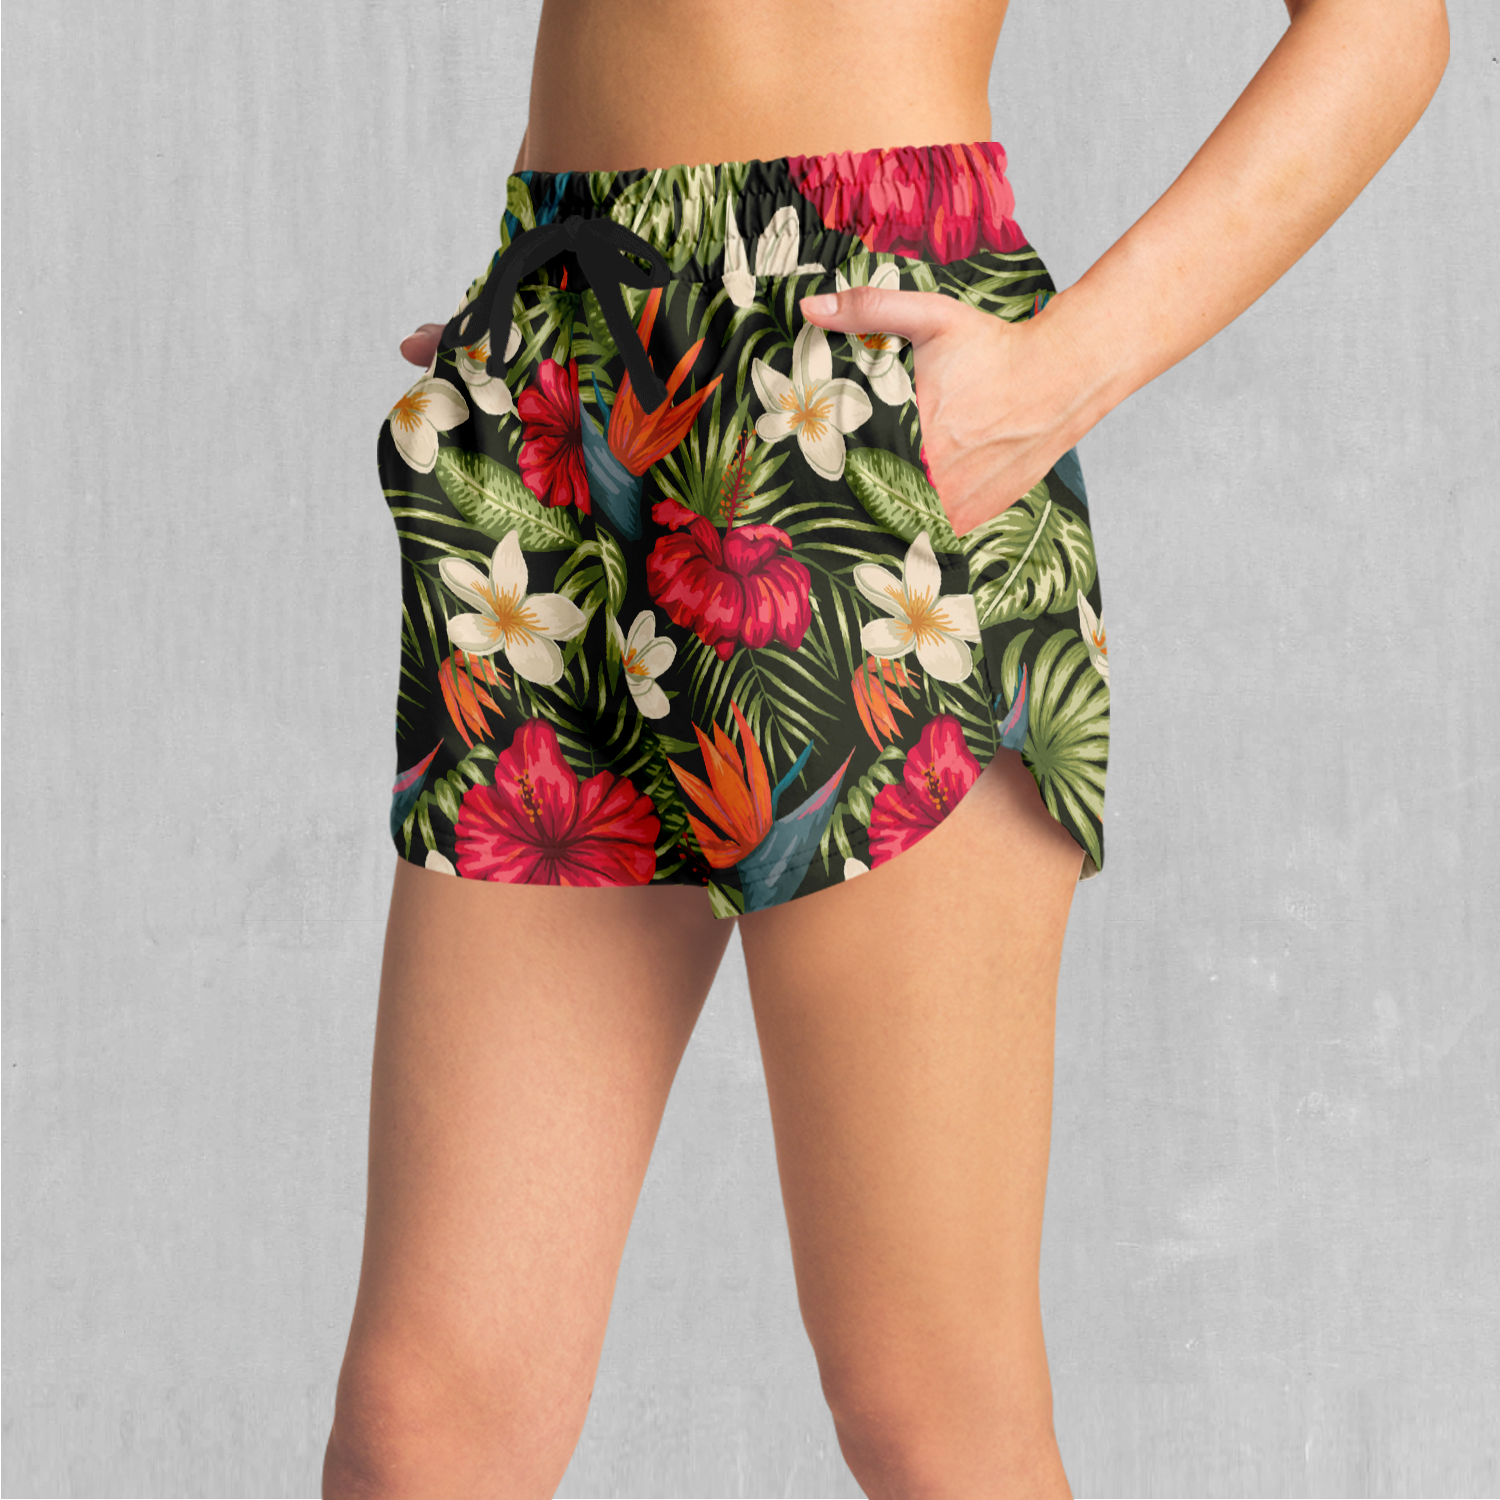 Botanical Women's Shorts